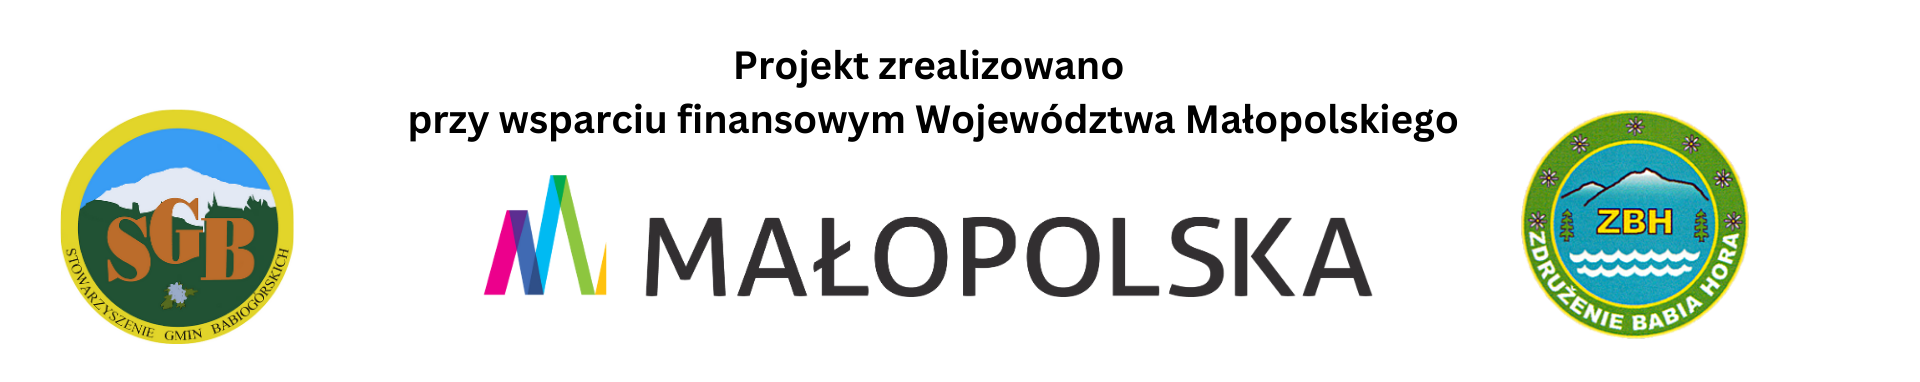 Projekt zrealizowano przy wsparciu finansowym Województwa Małopolskiego 2